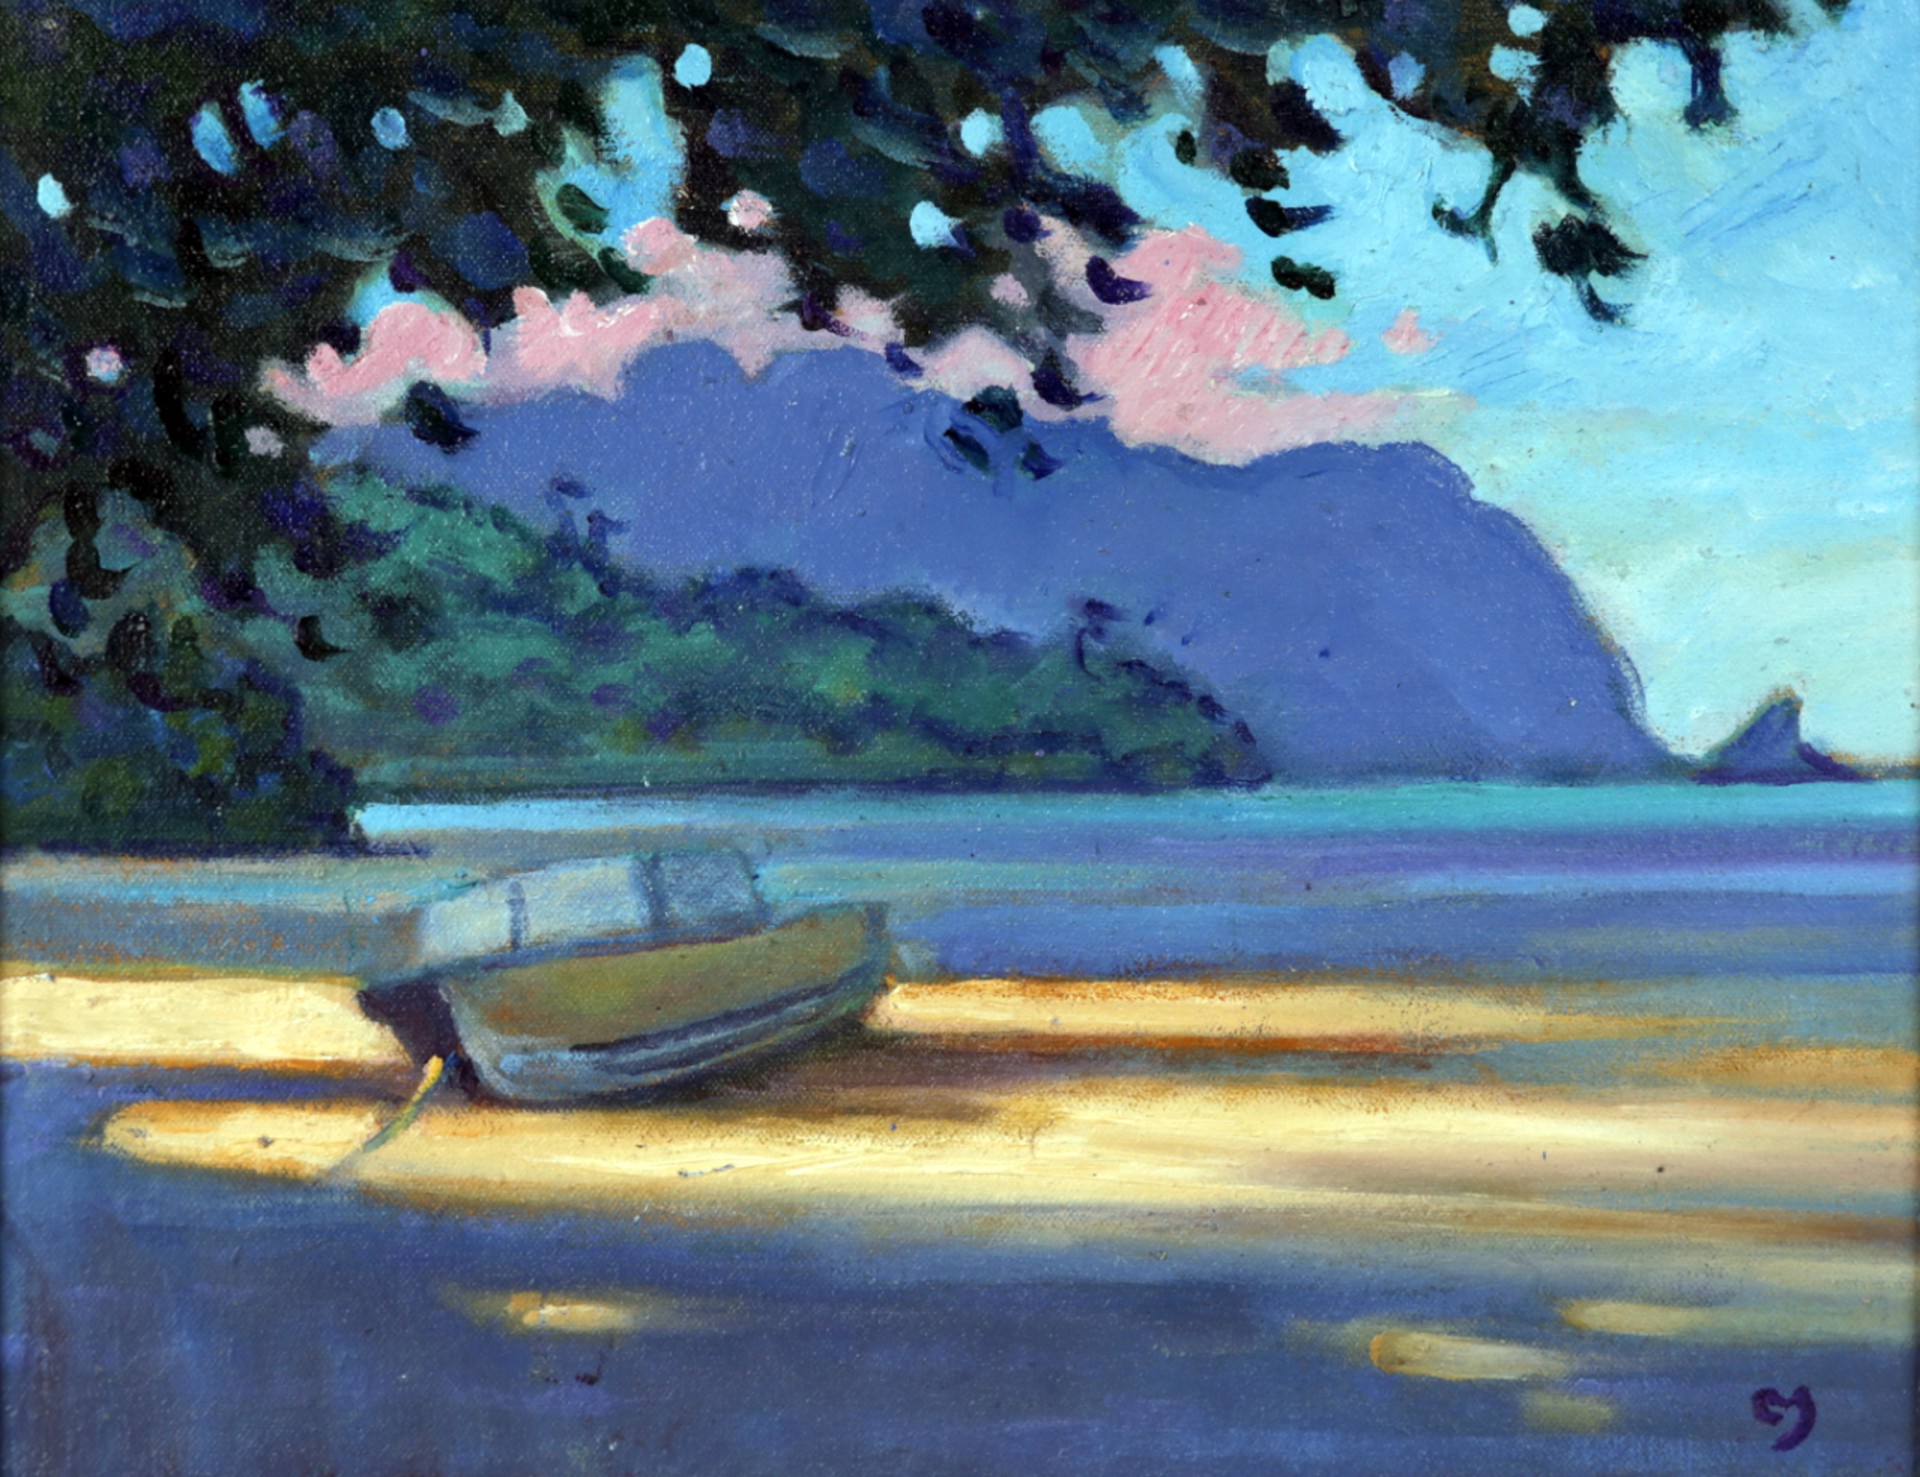 Kāneʻohe - Heʻeia by Dennis Morton